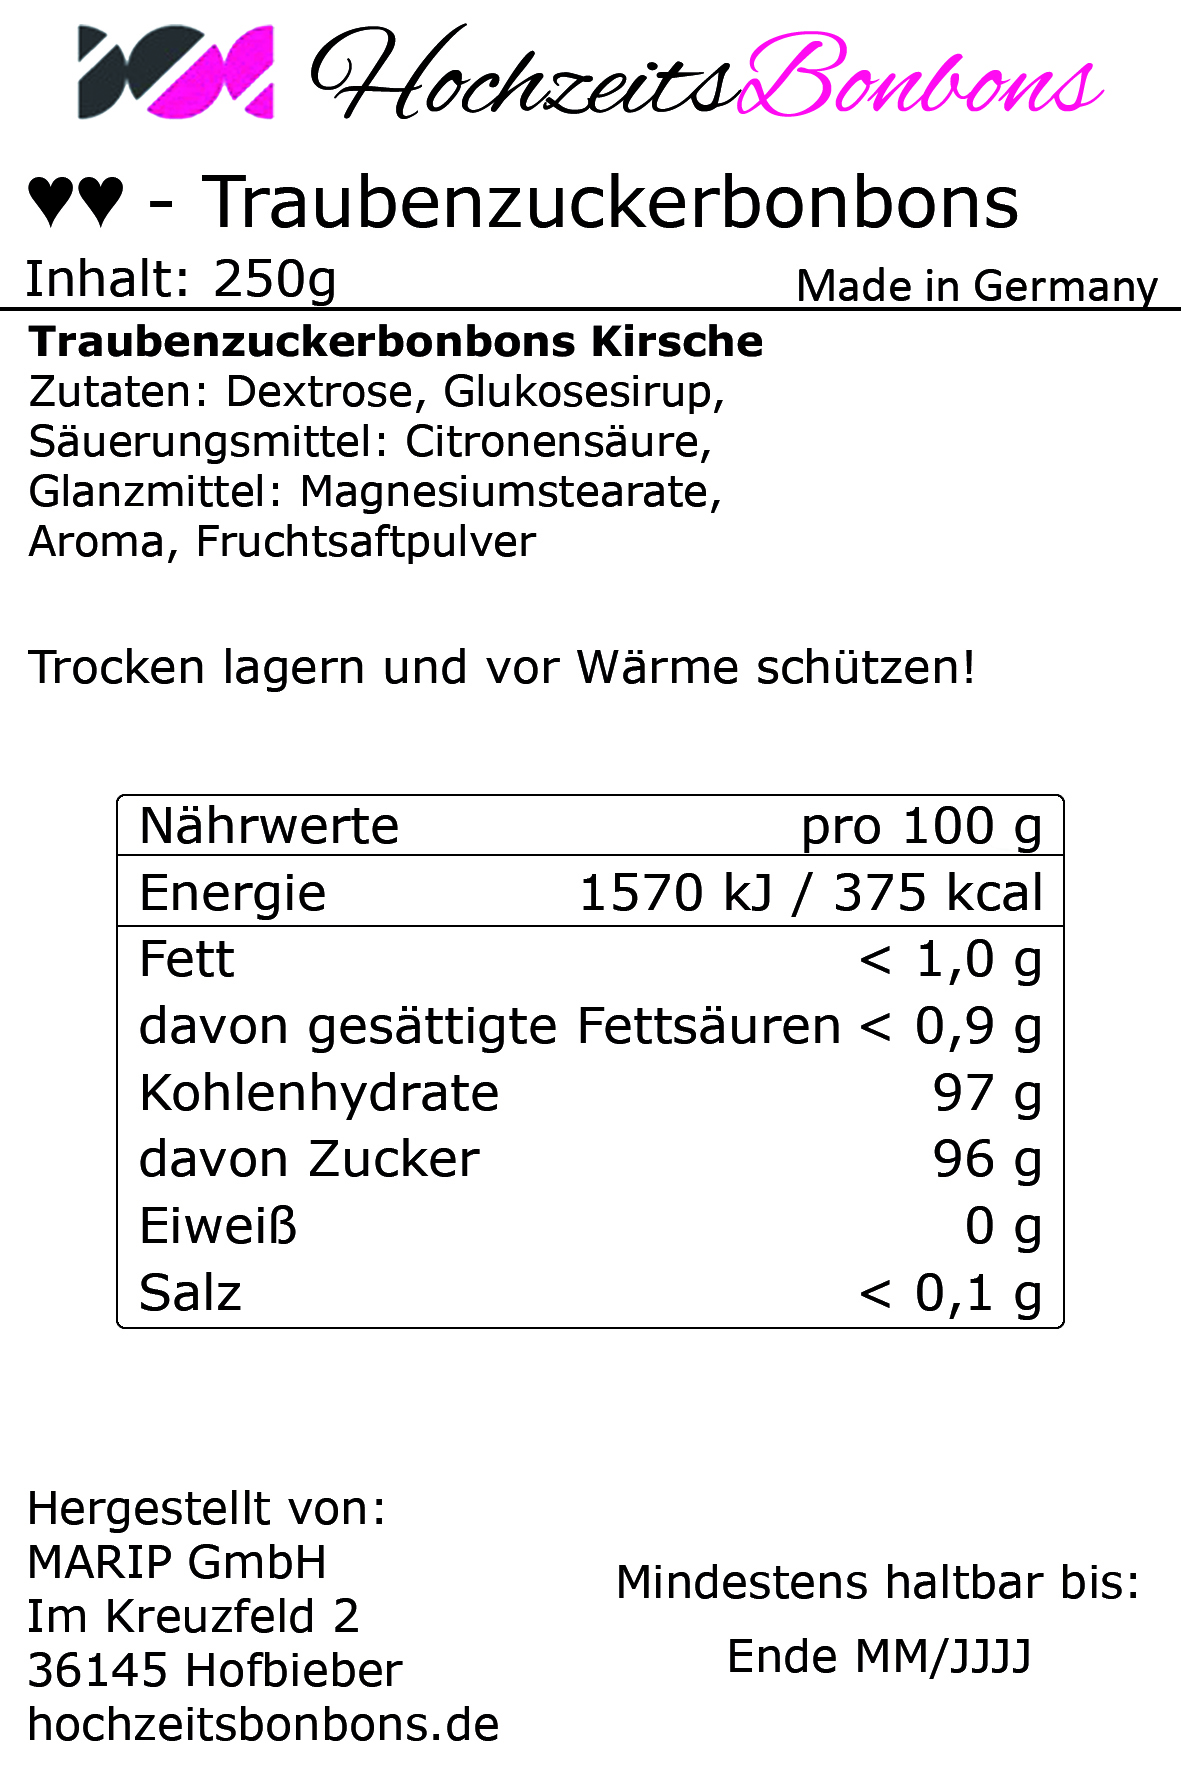 Traubenzuckerbonbons im Herzchen Wickler - Kirsch - 250g